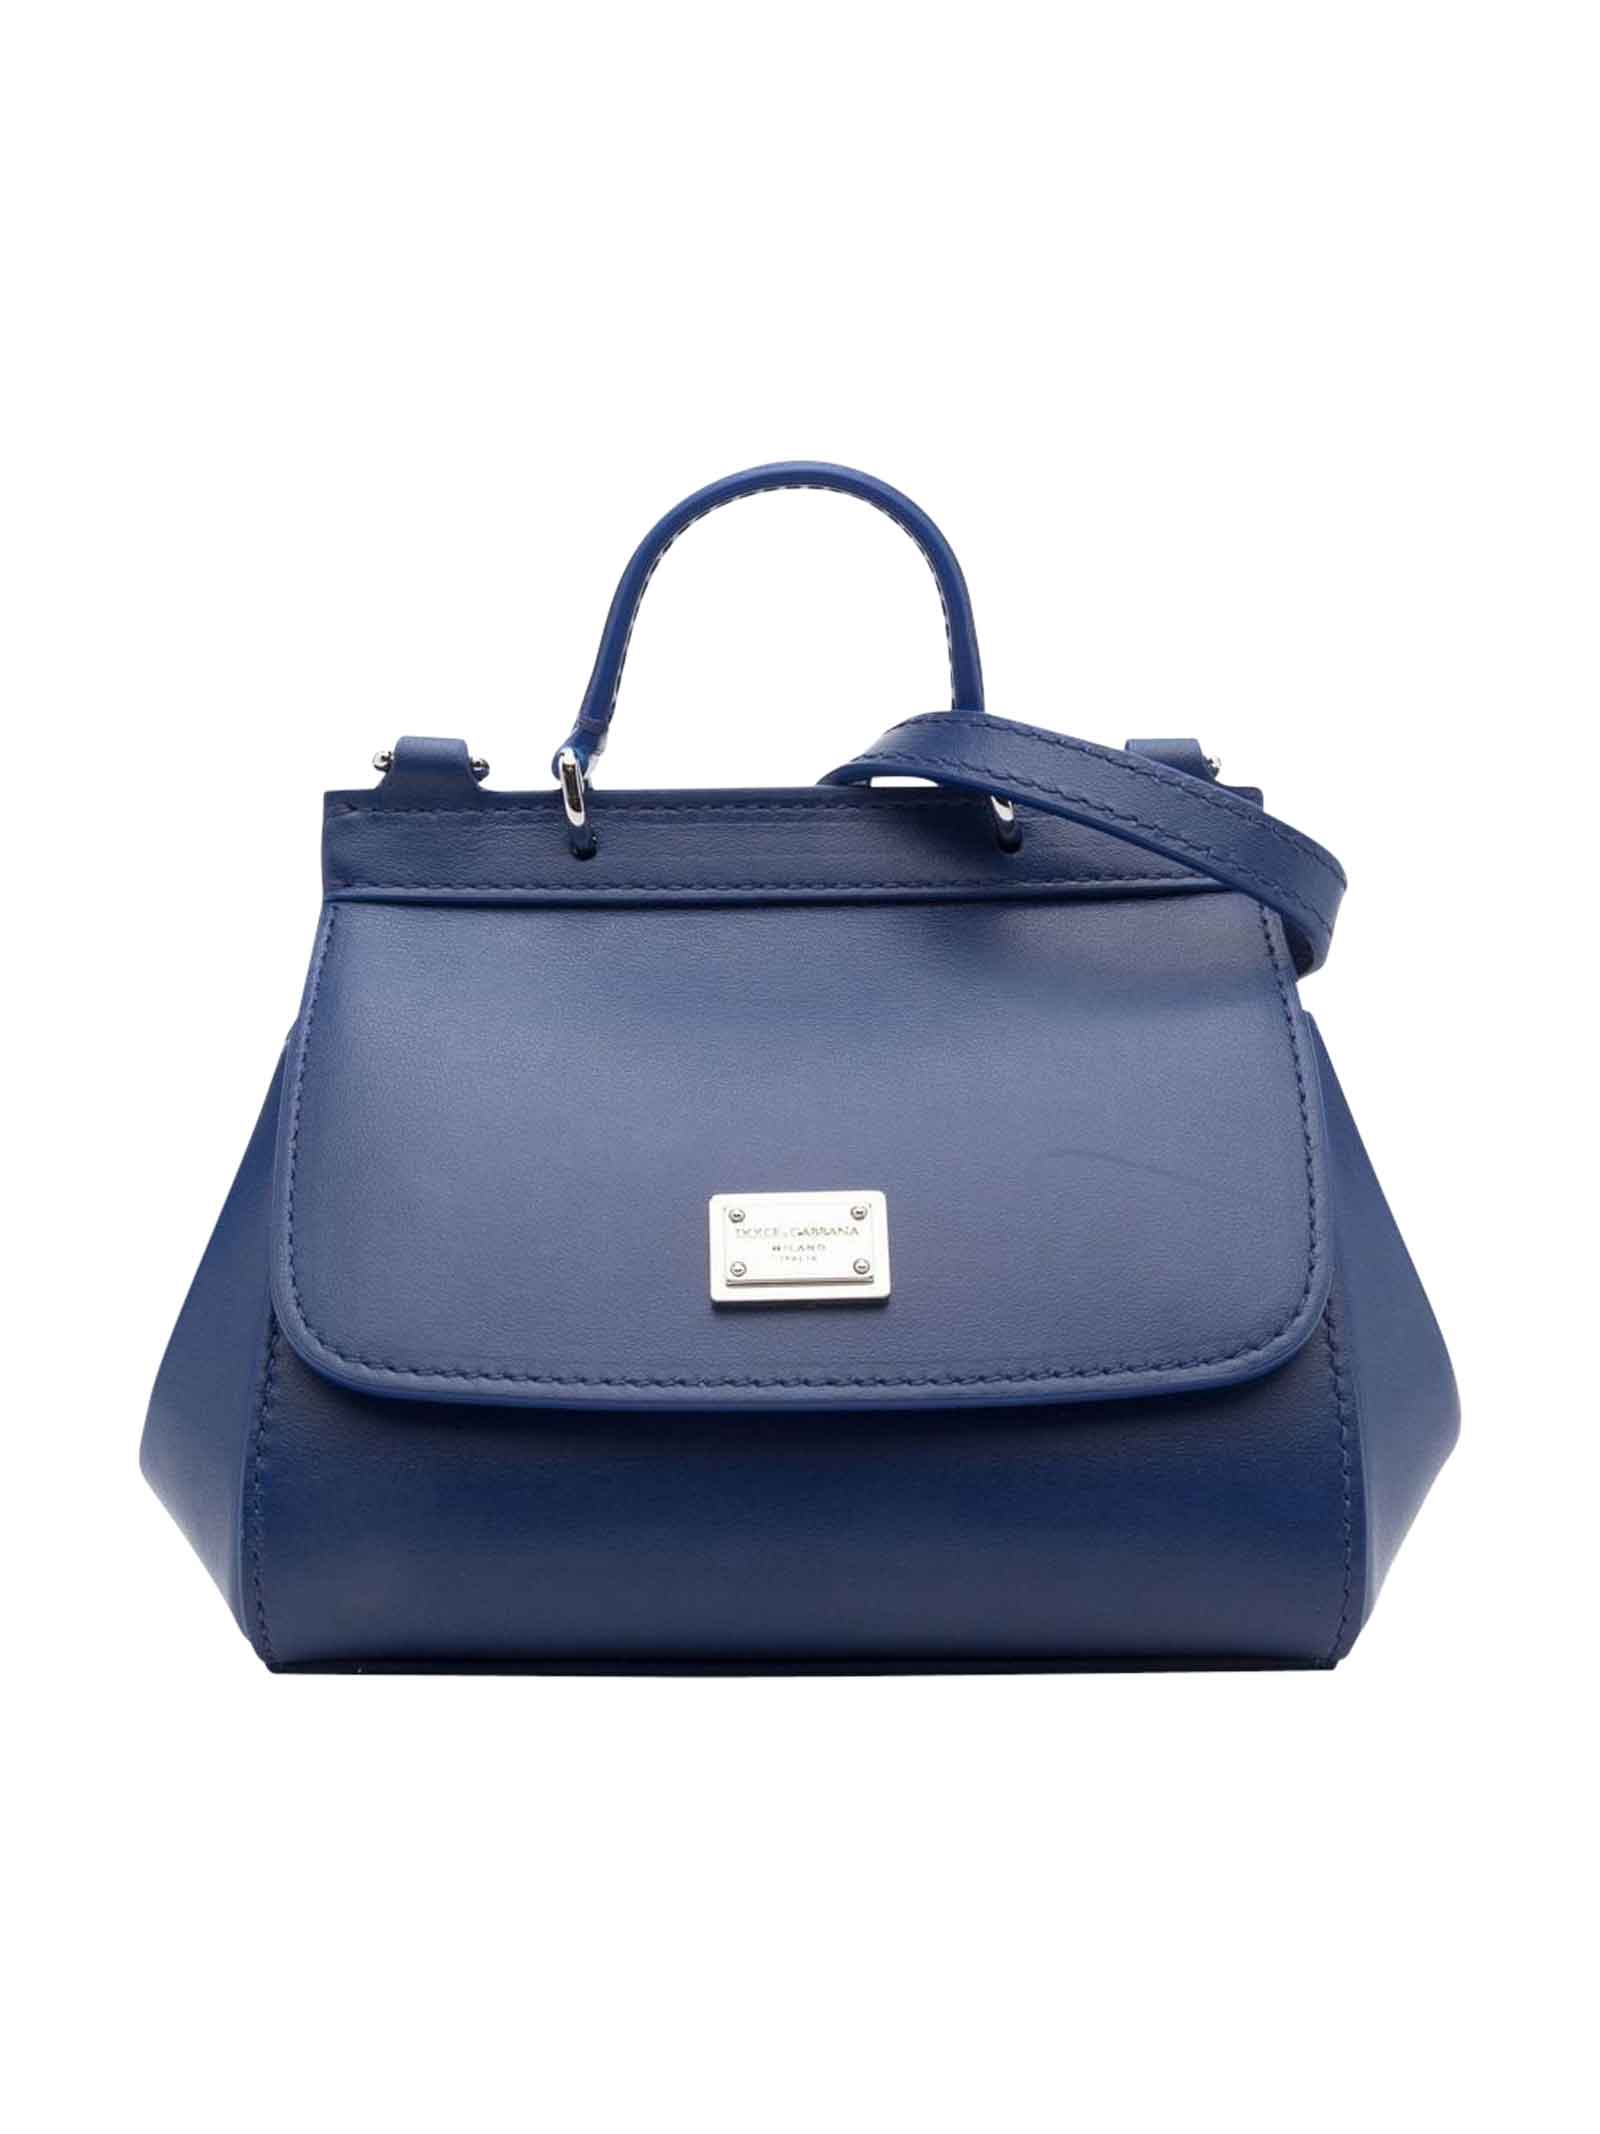 Dolce & Gabbana Blue Bag Girl